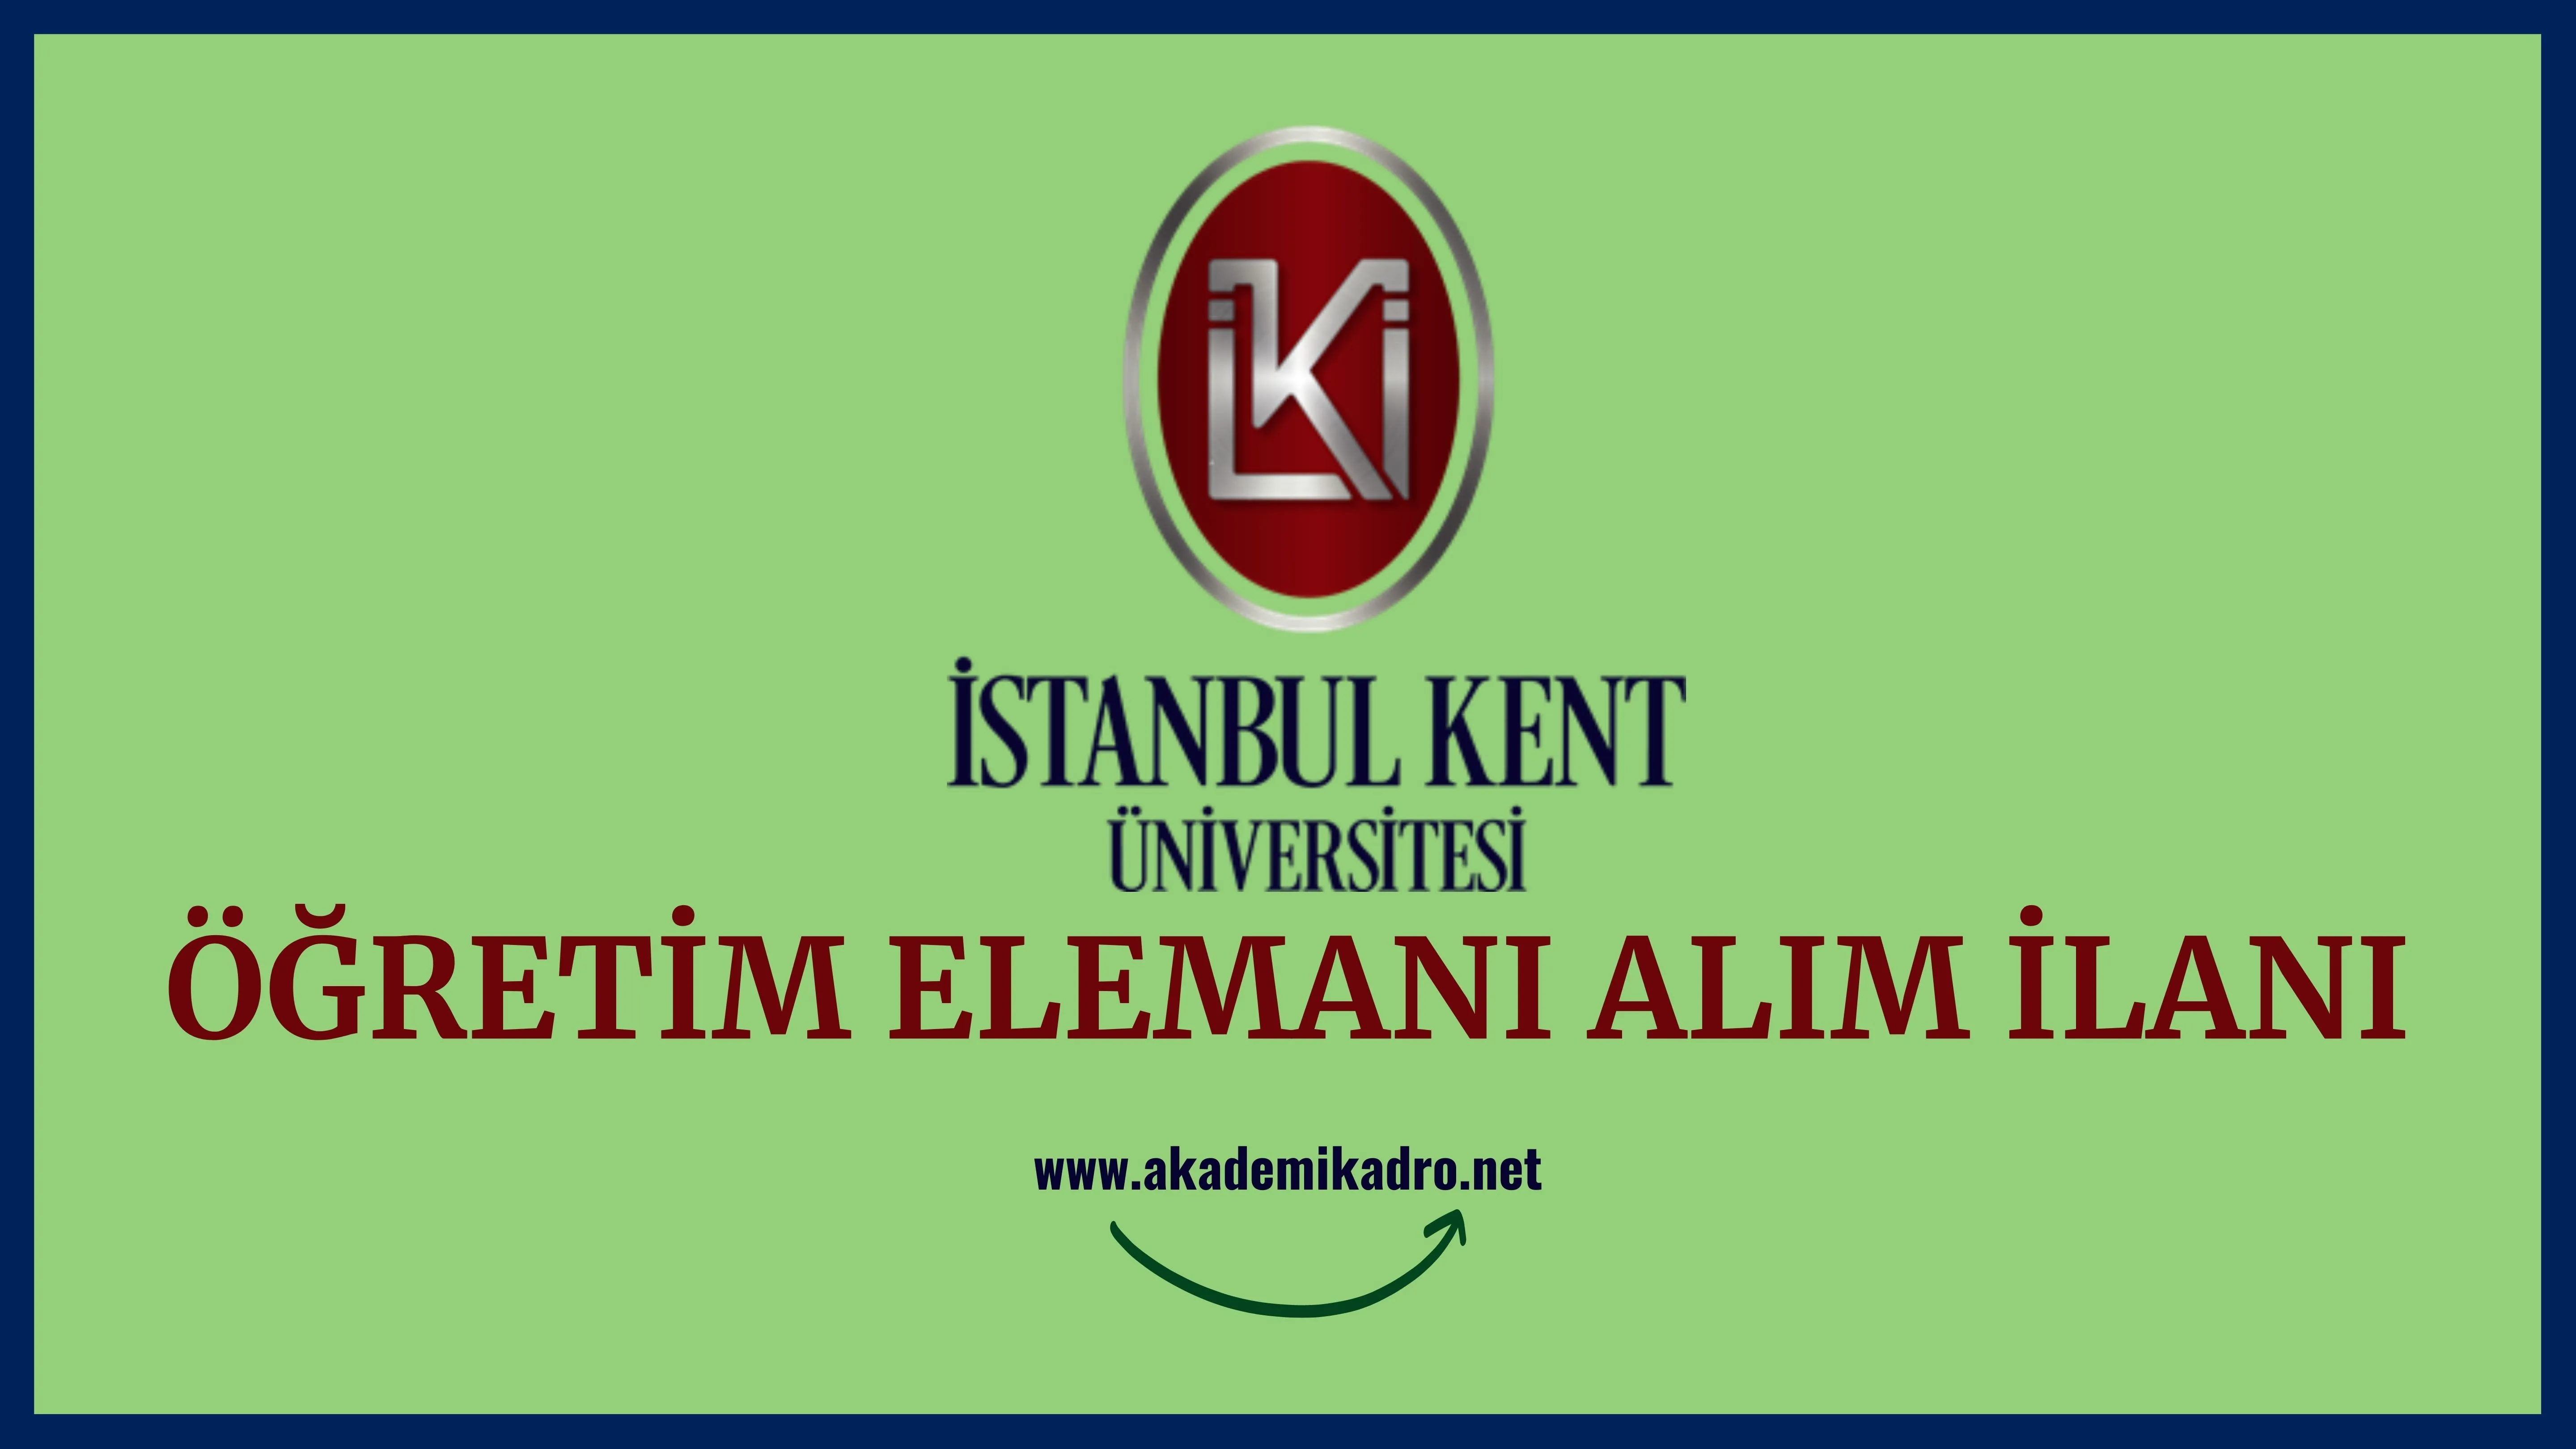 İstanbul Kent Üniversitesi 2 Araştırma görevlisi, 5 Öğretim görevlisi ve 5 Öğretim üyesi alacak. Son başvuru tarihi 27 Ocak 2023.